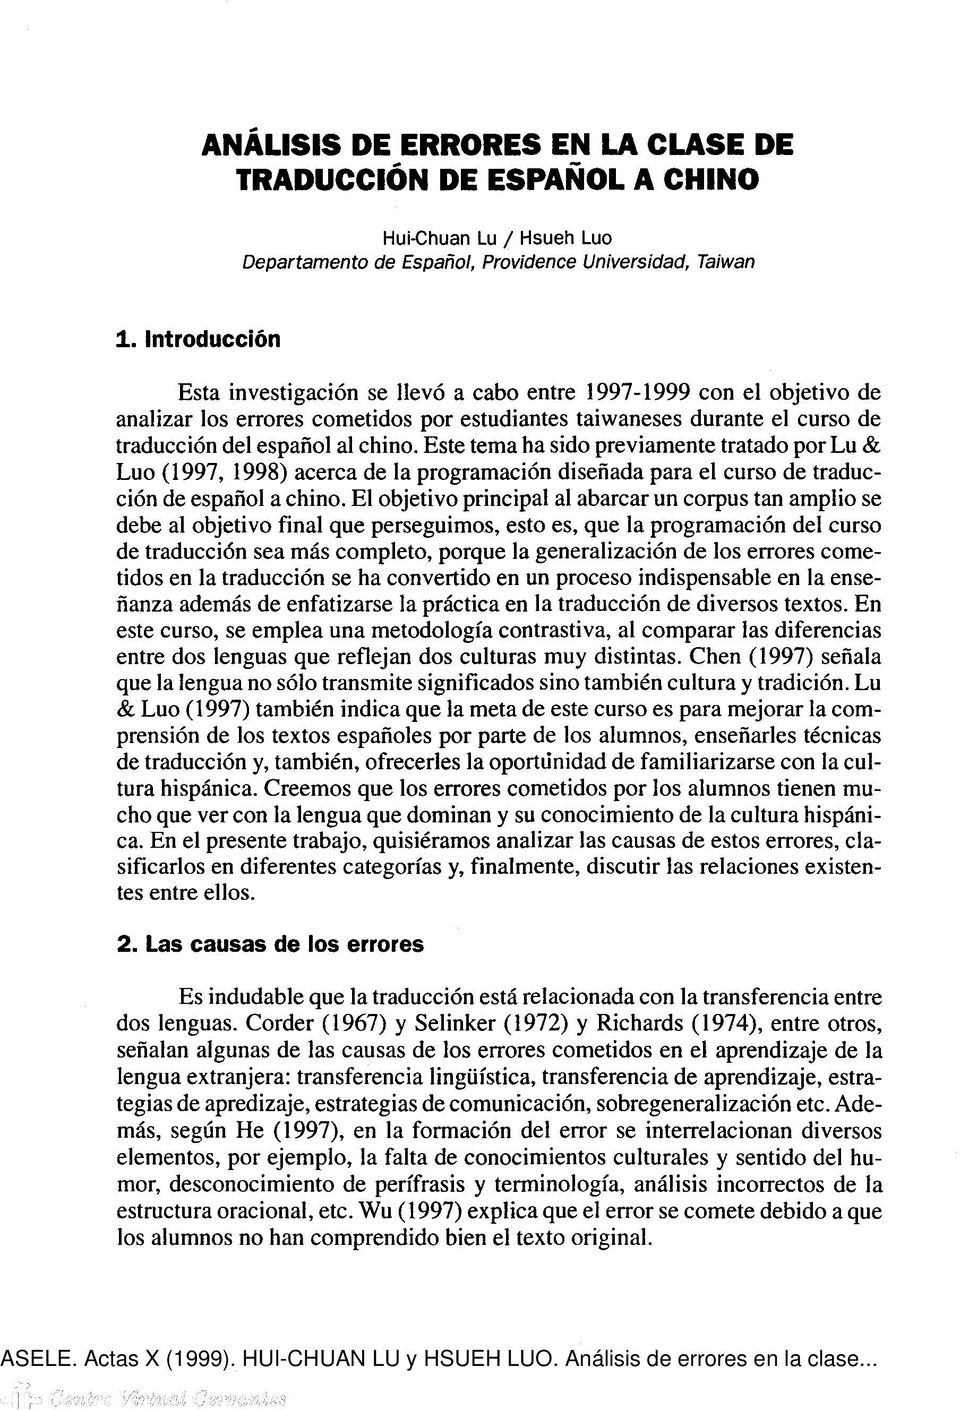 Este tema ha sido previamente tratado por Lu & Luo (1997, 1998) acerca de la programación diseñada para el curso de traducción de español a chino.